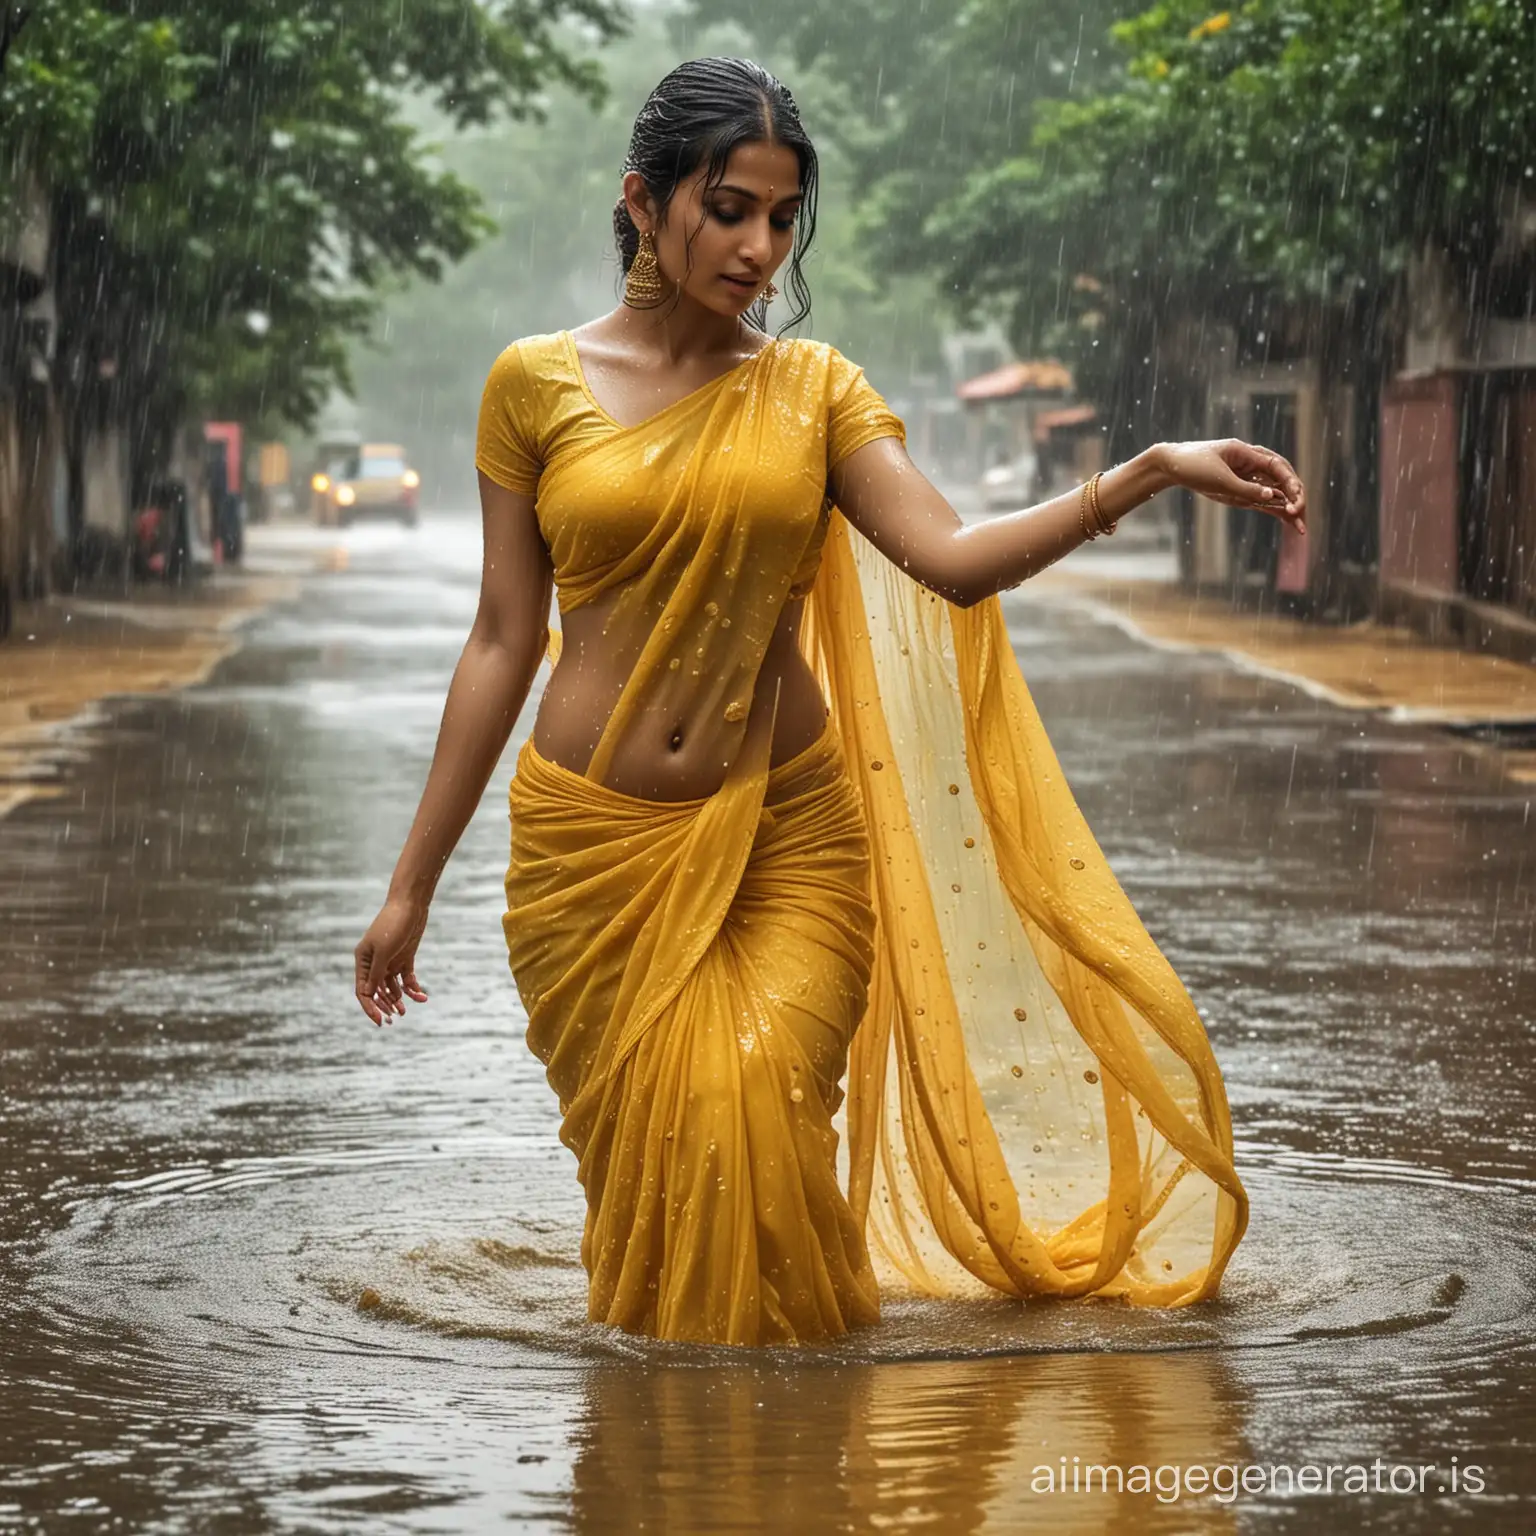 Glamorous-Indian-Model-in-Yellow-Chiffon-Saree-Caught-in-the-Rain